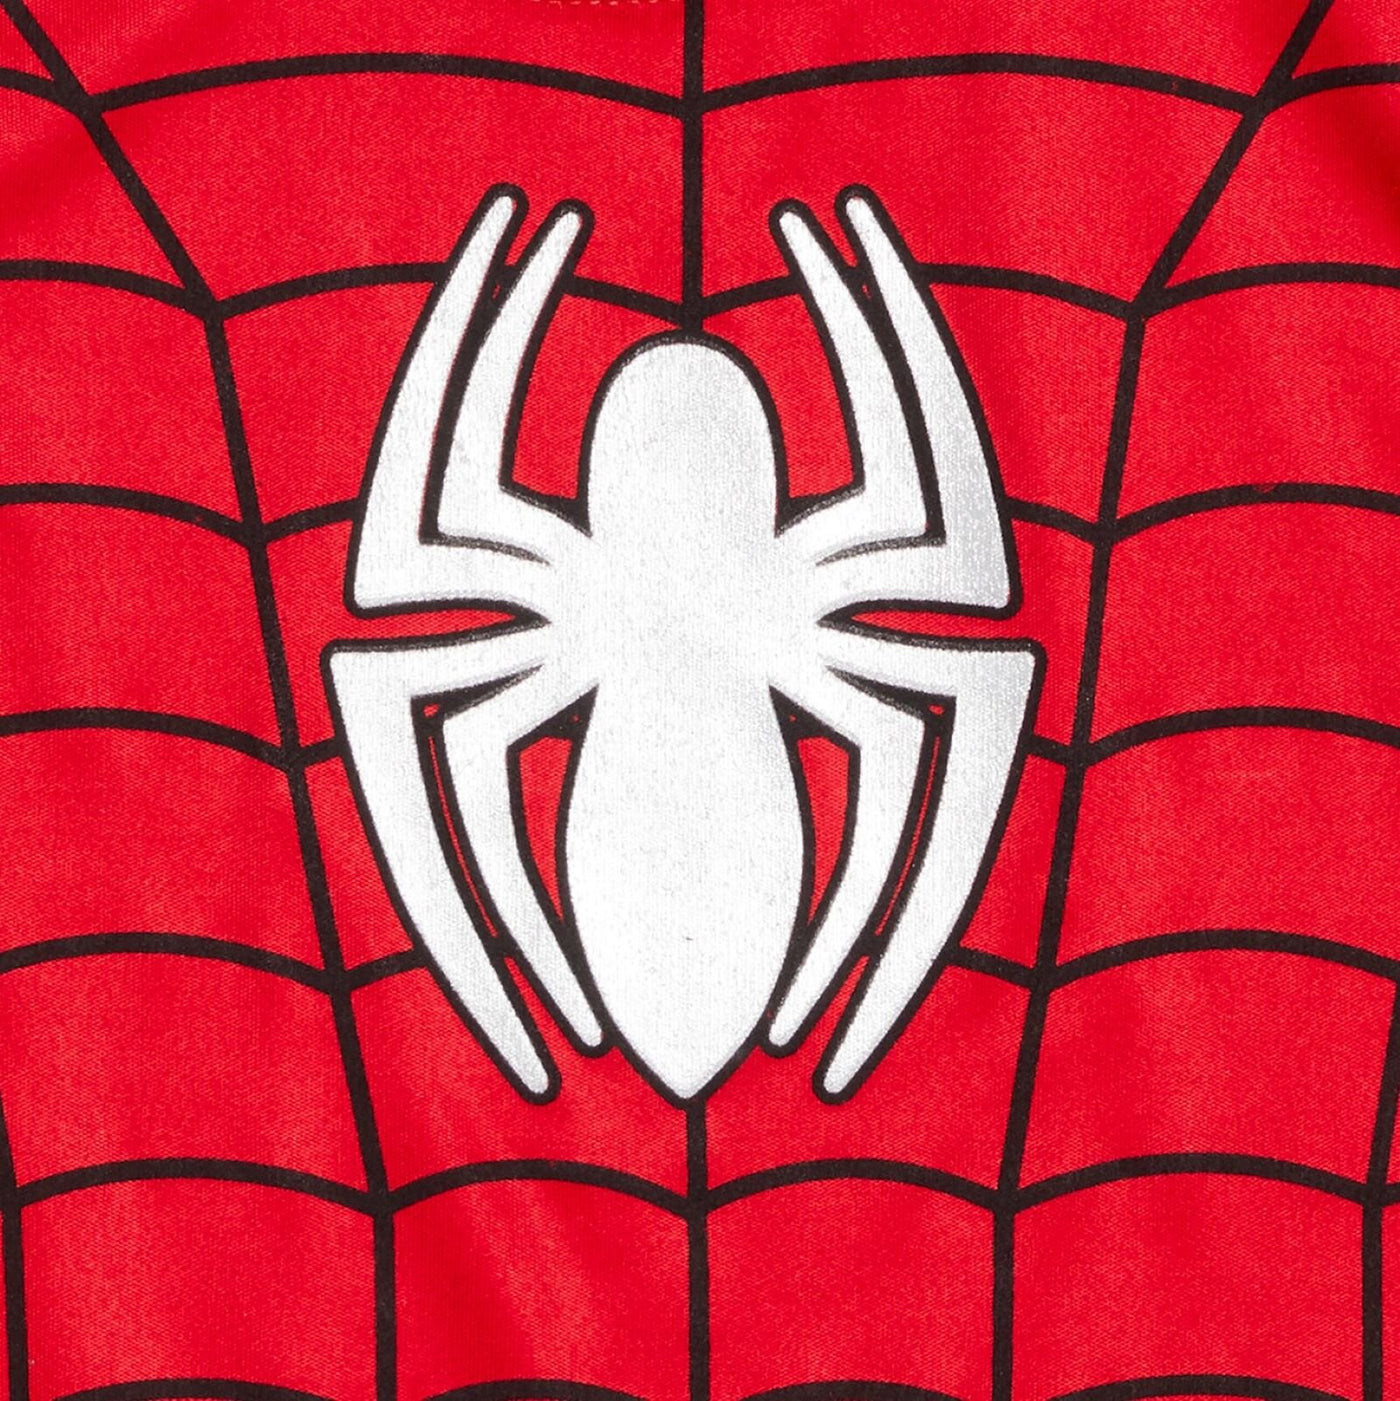 Camiseta sin mangas y pantalones cortos de malla de Marvel Avengers Spider-Man